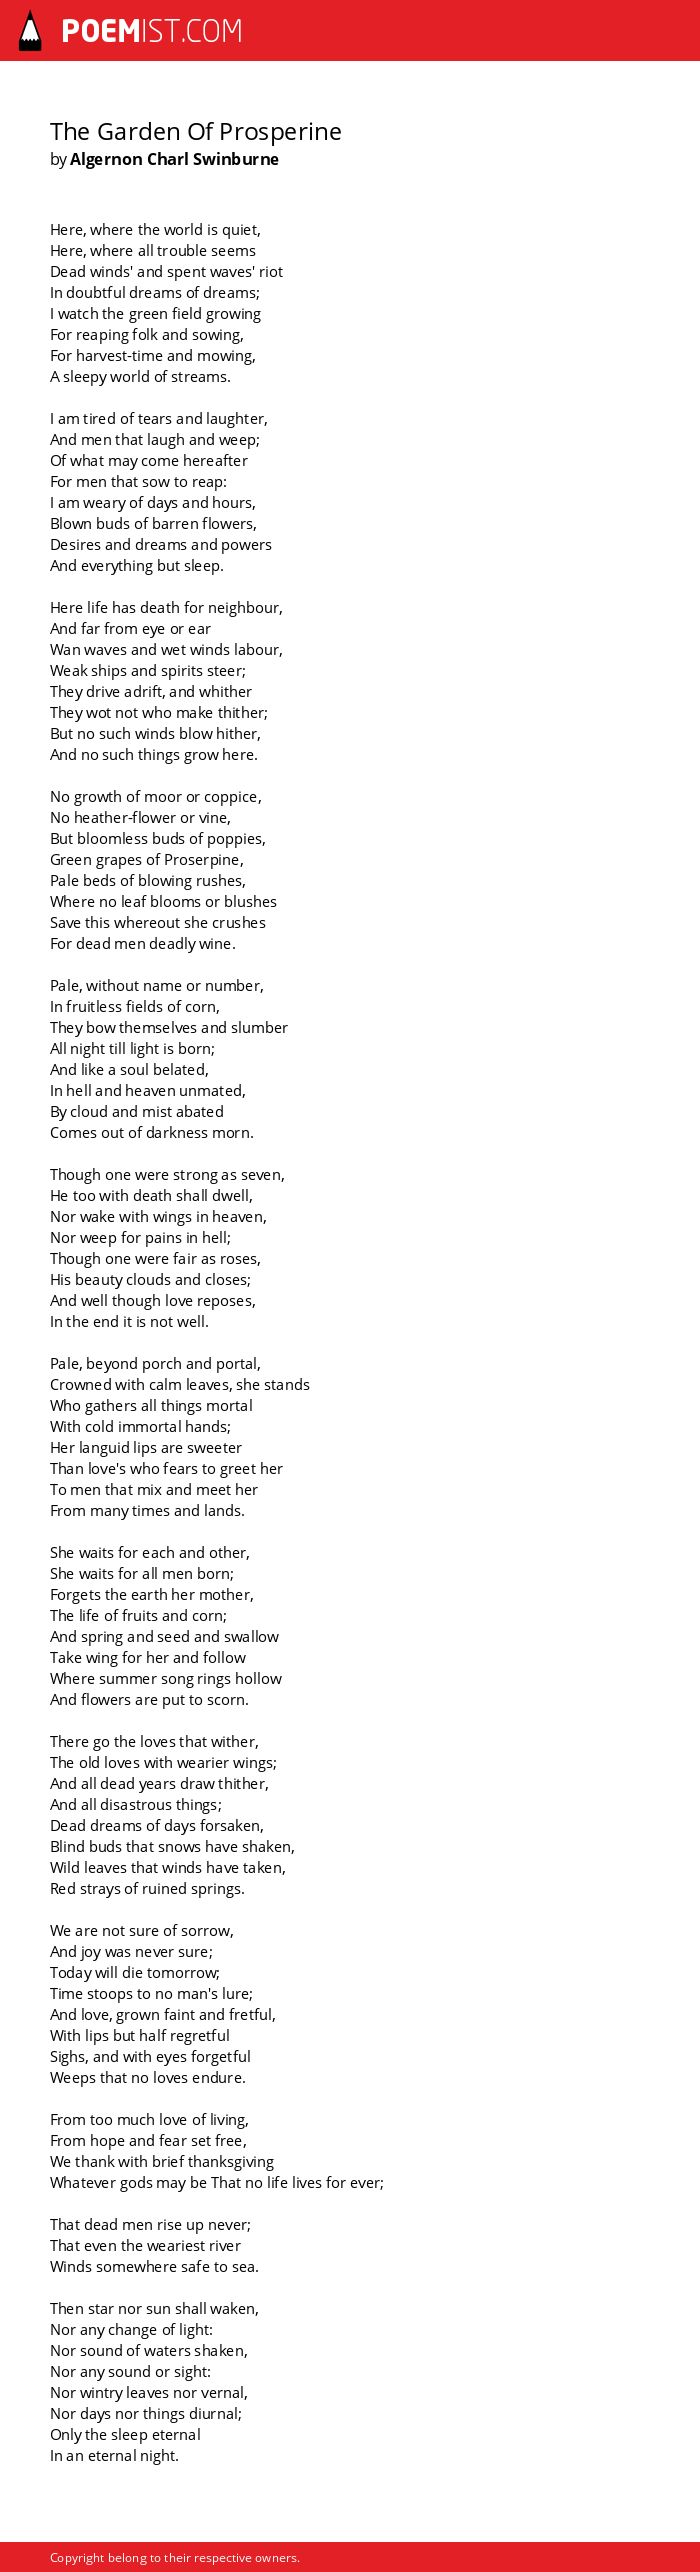 The Garden Of Prosperine By Algernon Charl Swinburne Poemist